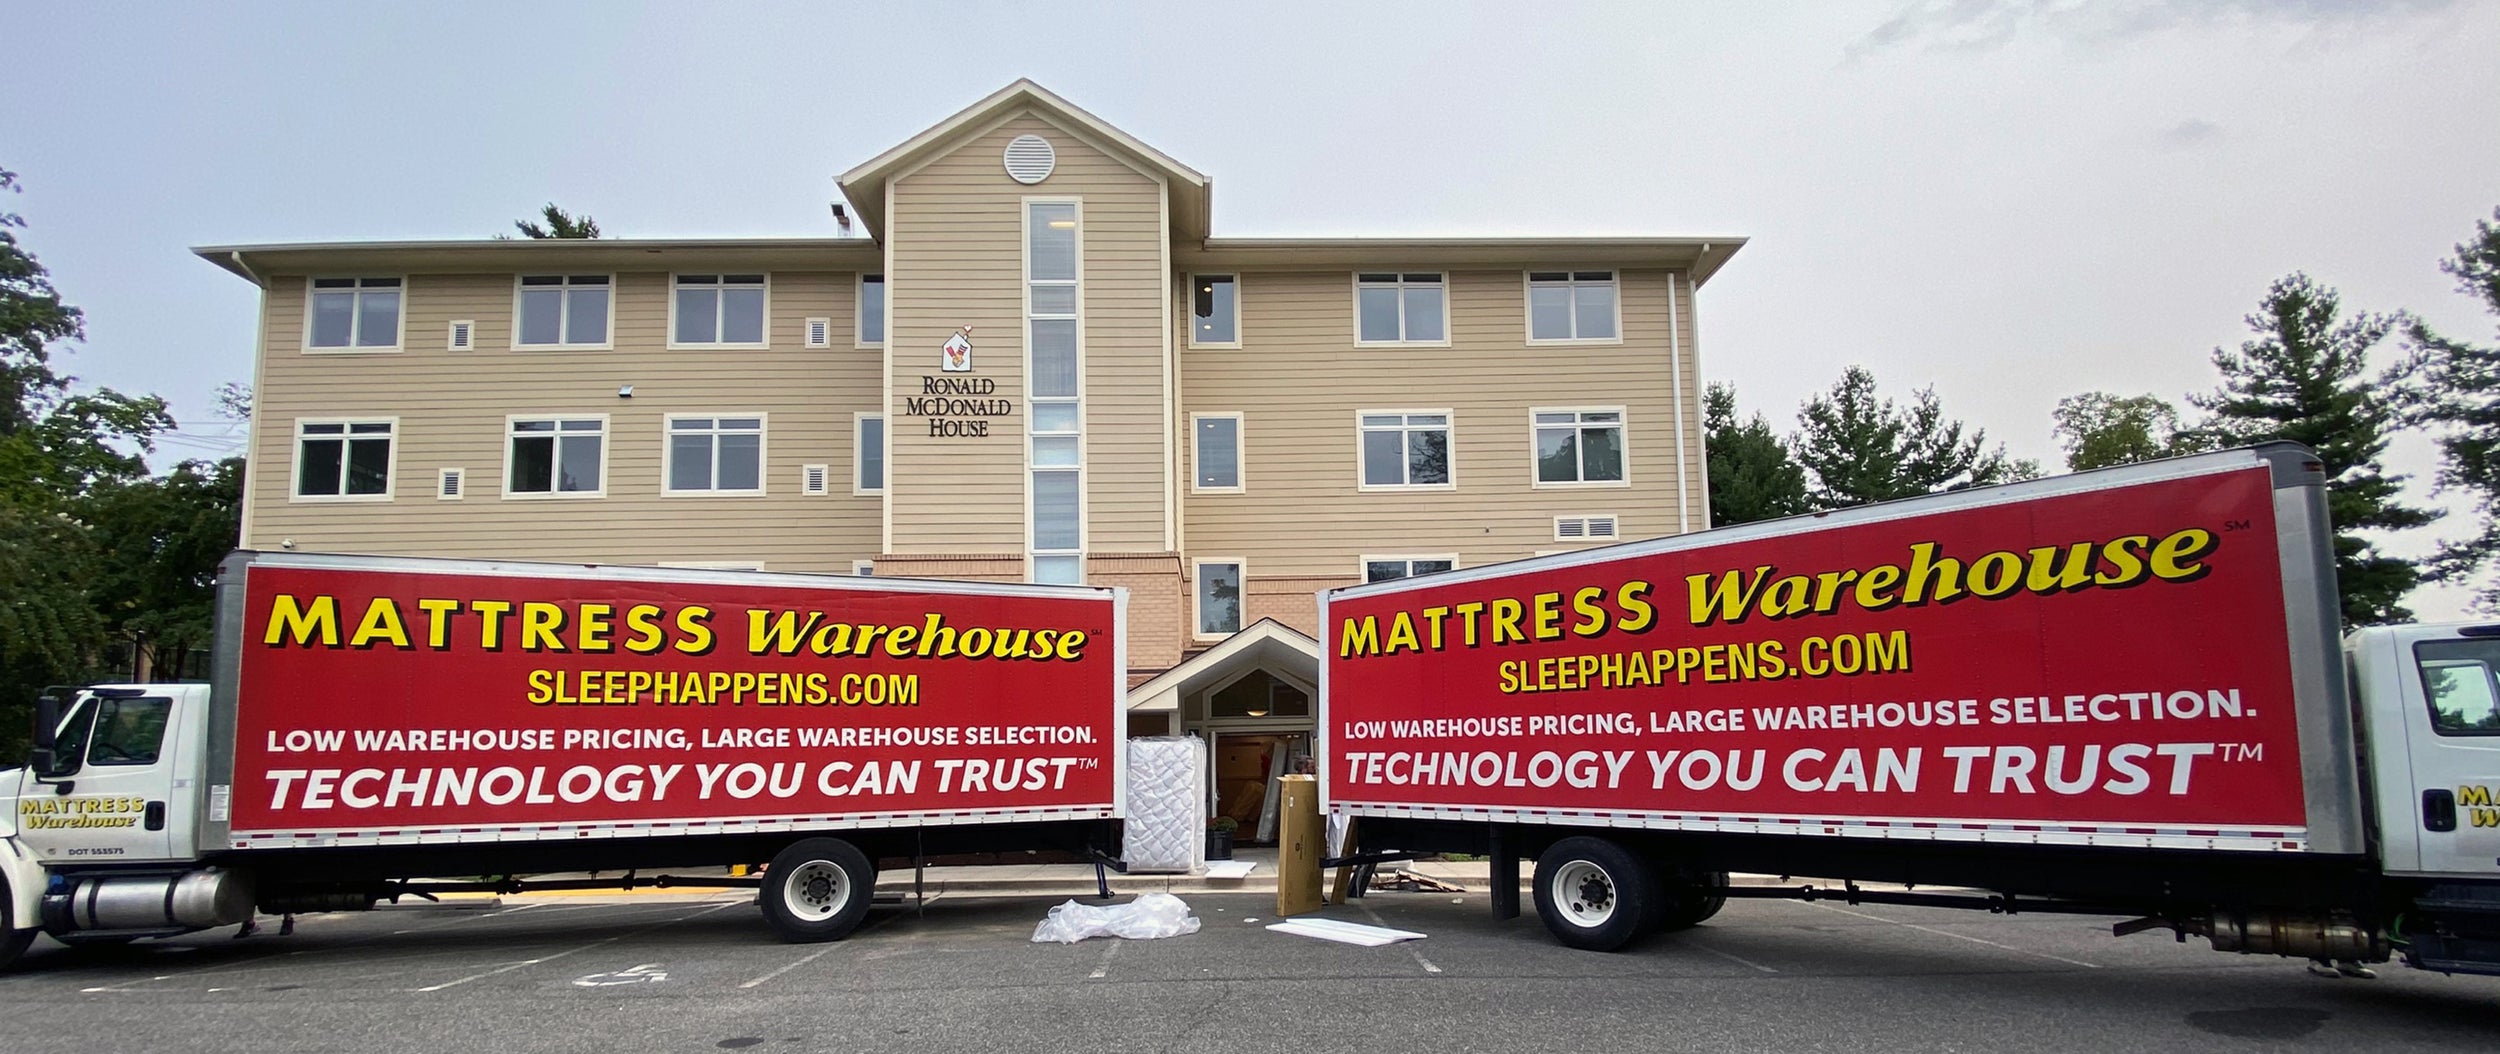 mattress warehouse bed match reviews